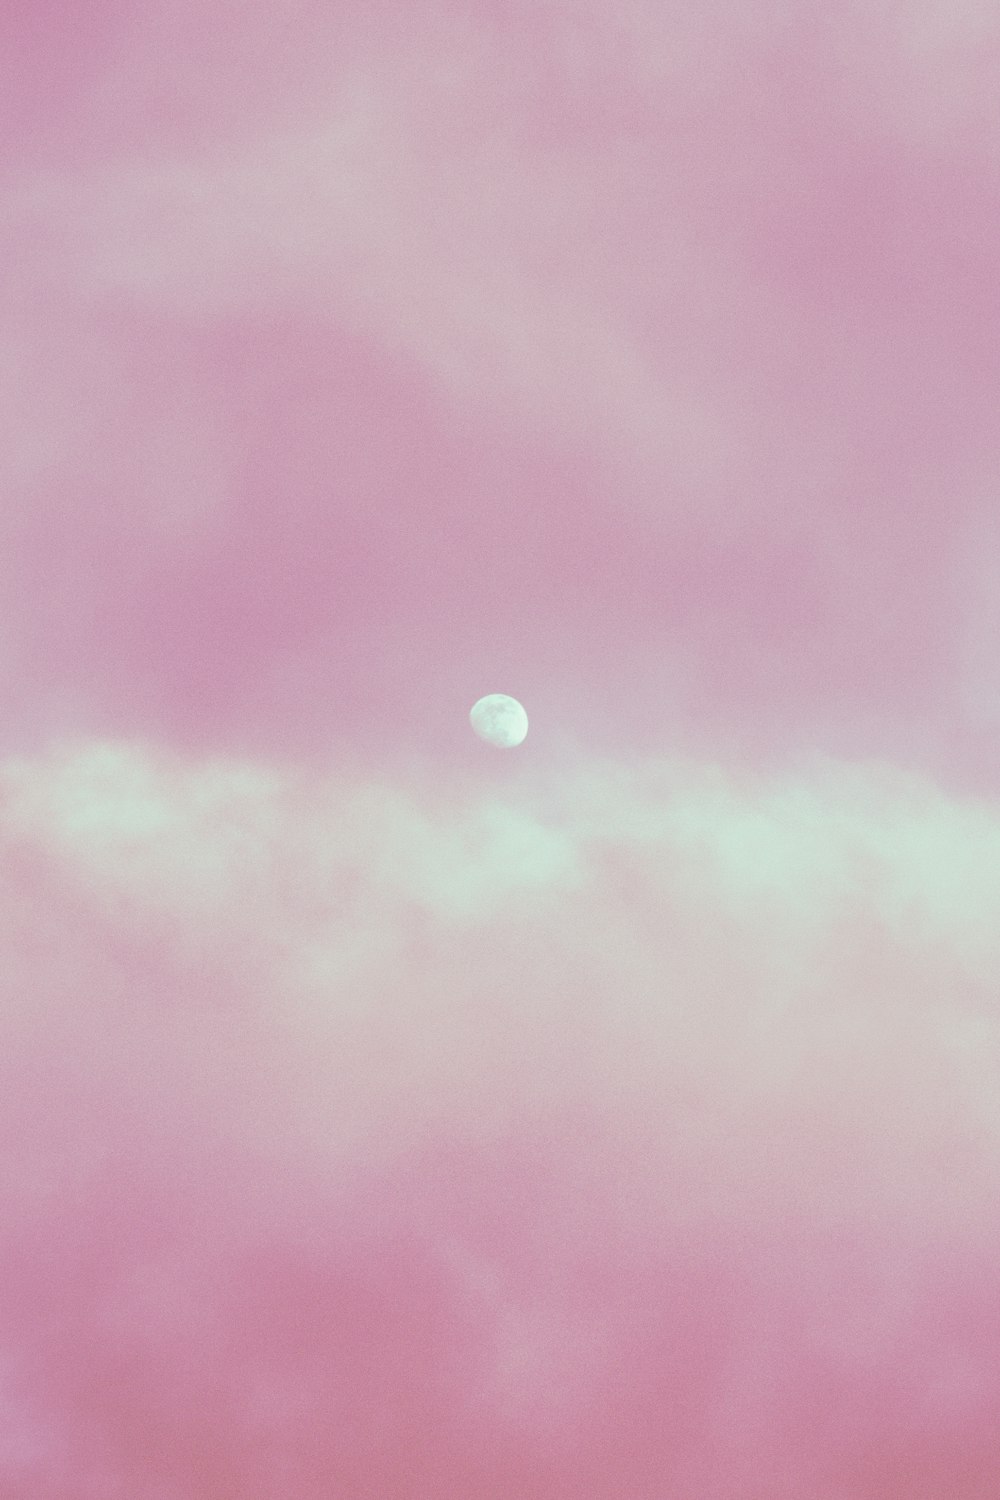 cielo rosa e blu con la luna